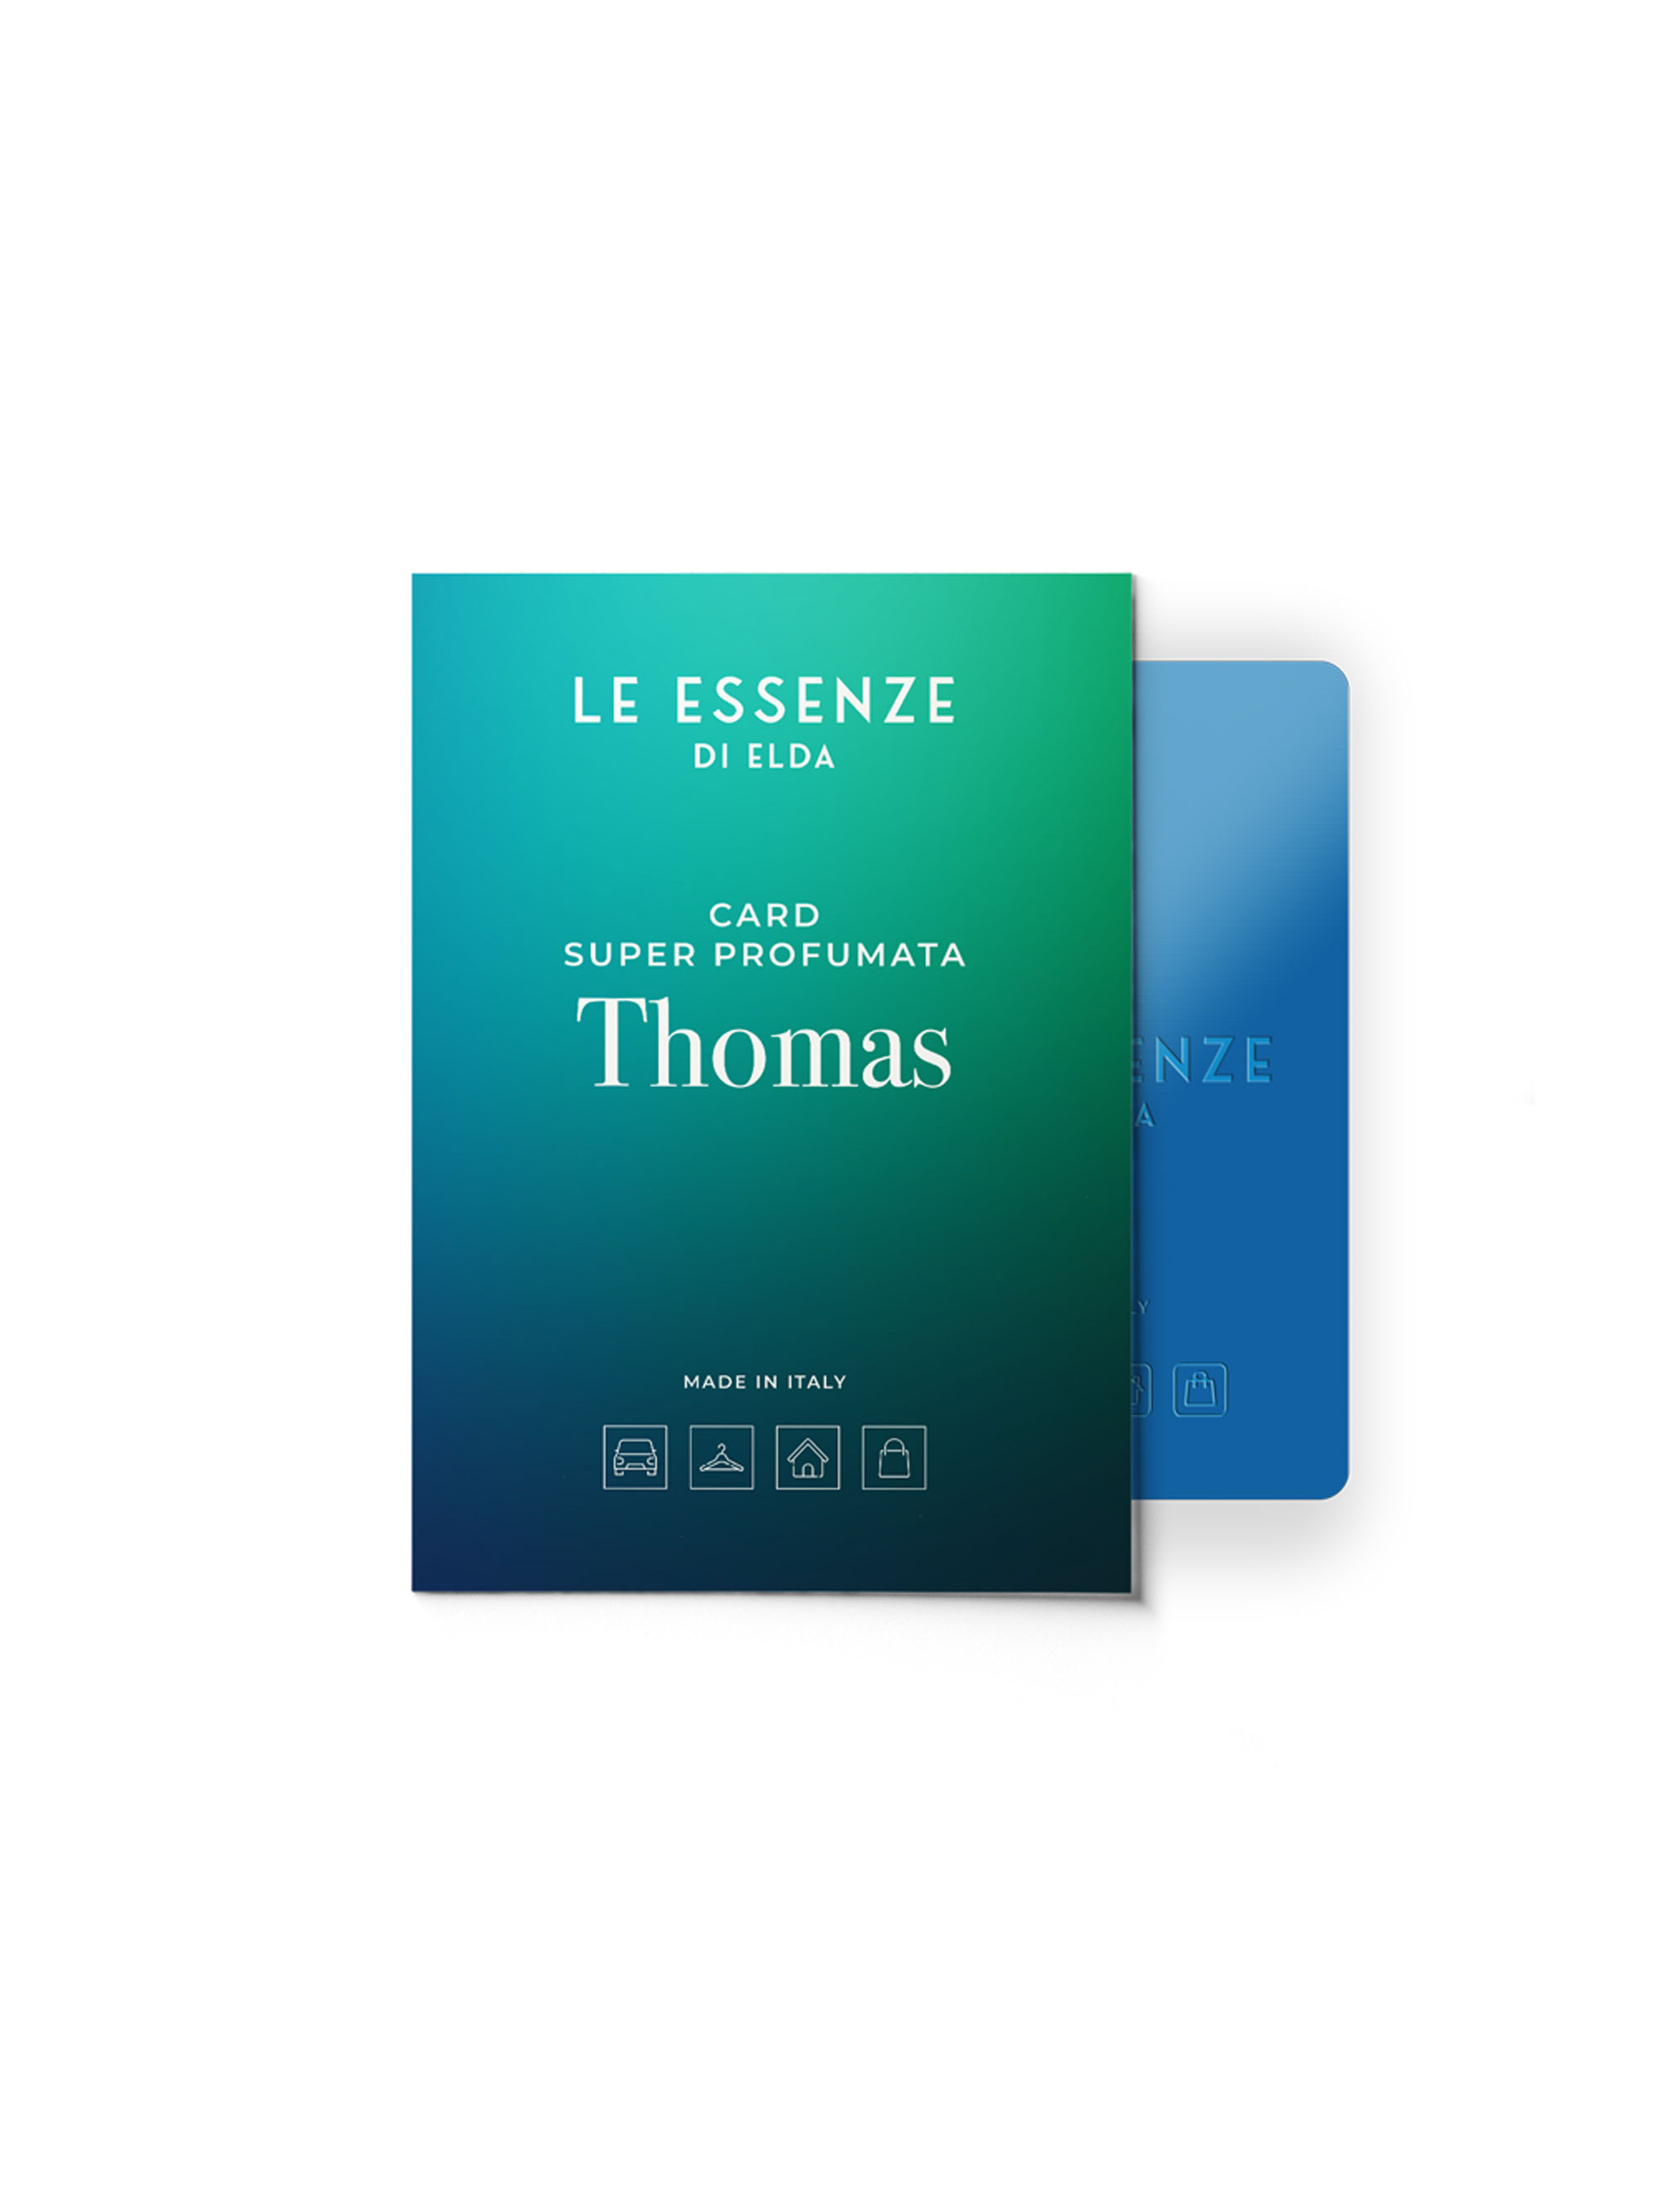 Card Super Profumata Thomas - super scented cards